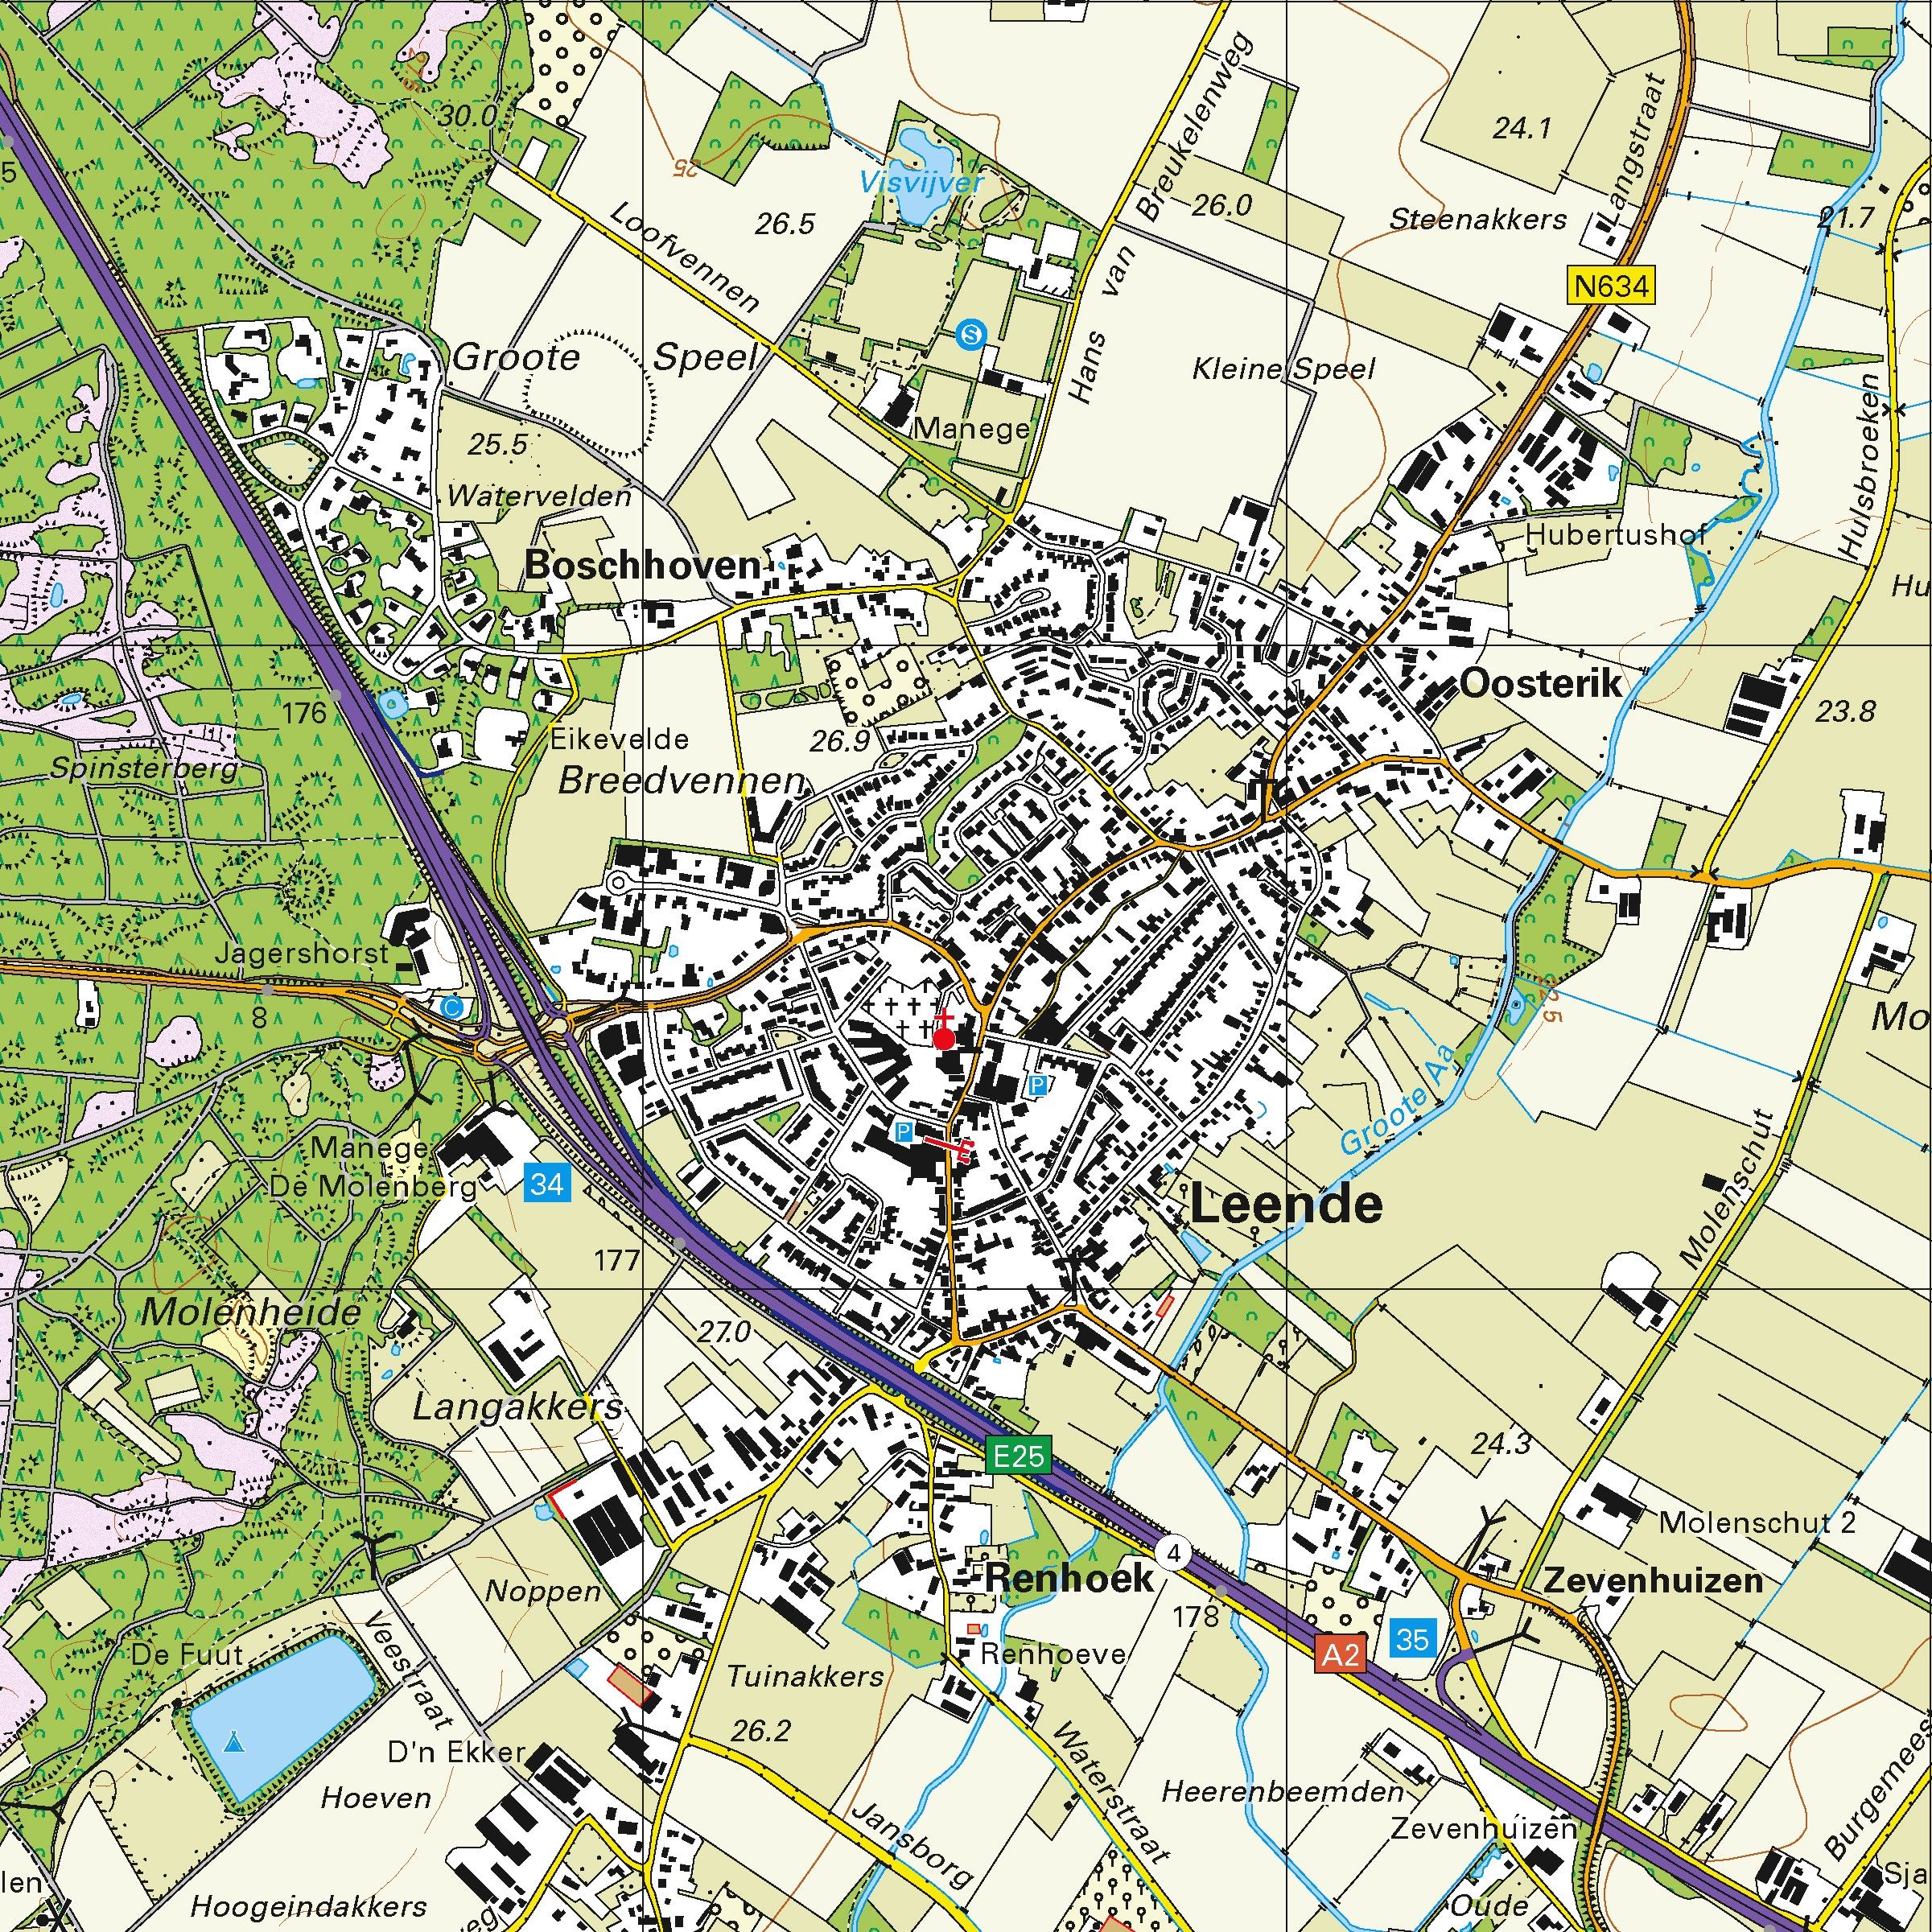 Topografische kaart schaal 1:25.000 (Eindhoven, Waalre, Aalst, Geldrop, Heeze, Nuenen, Valkenswaard)